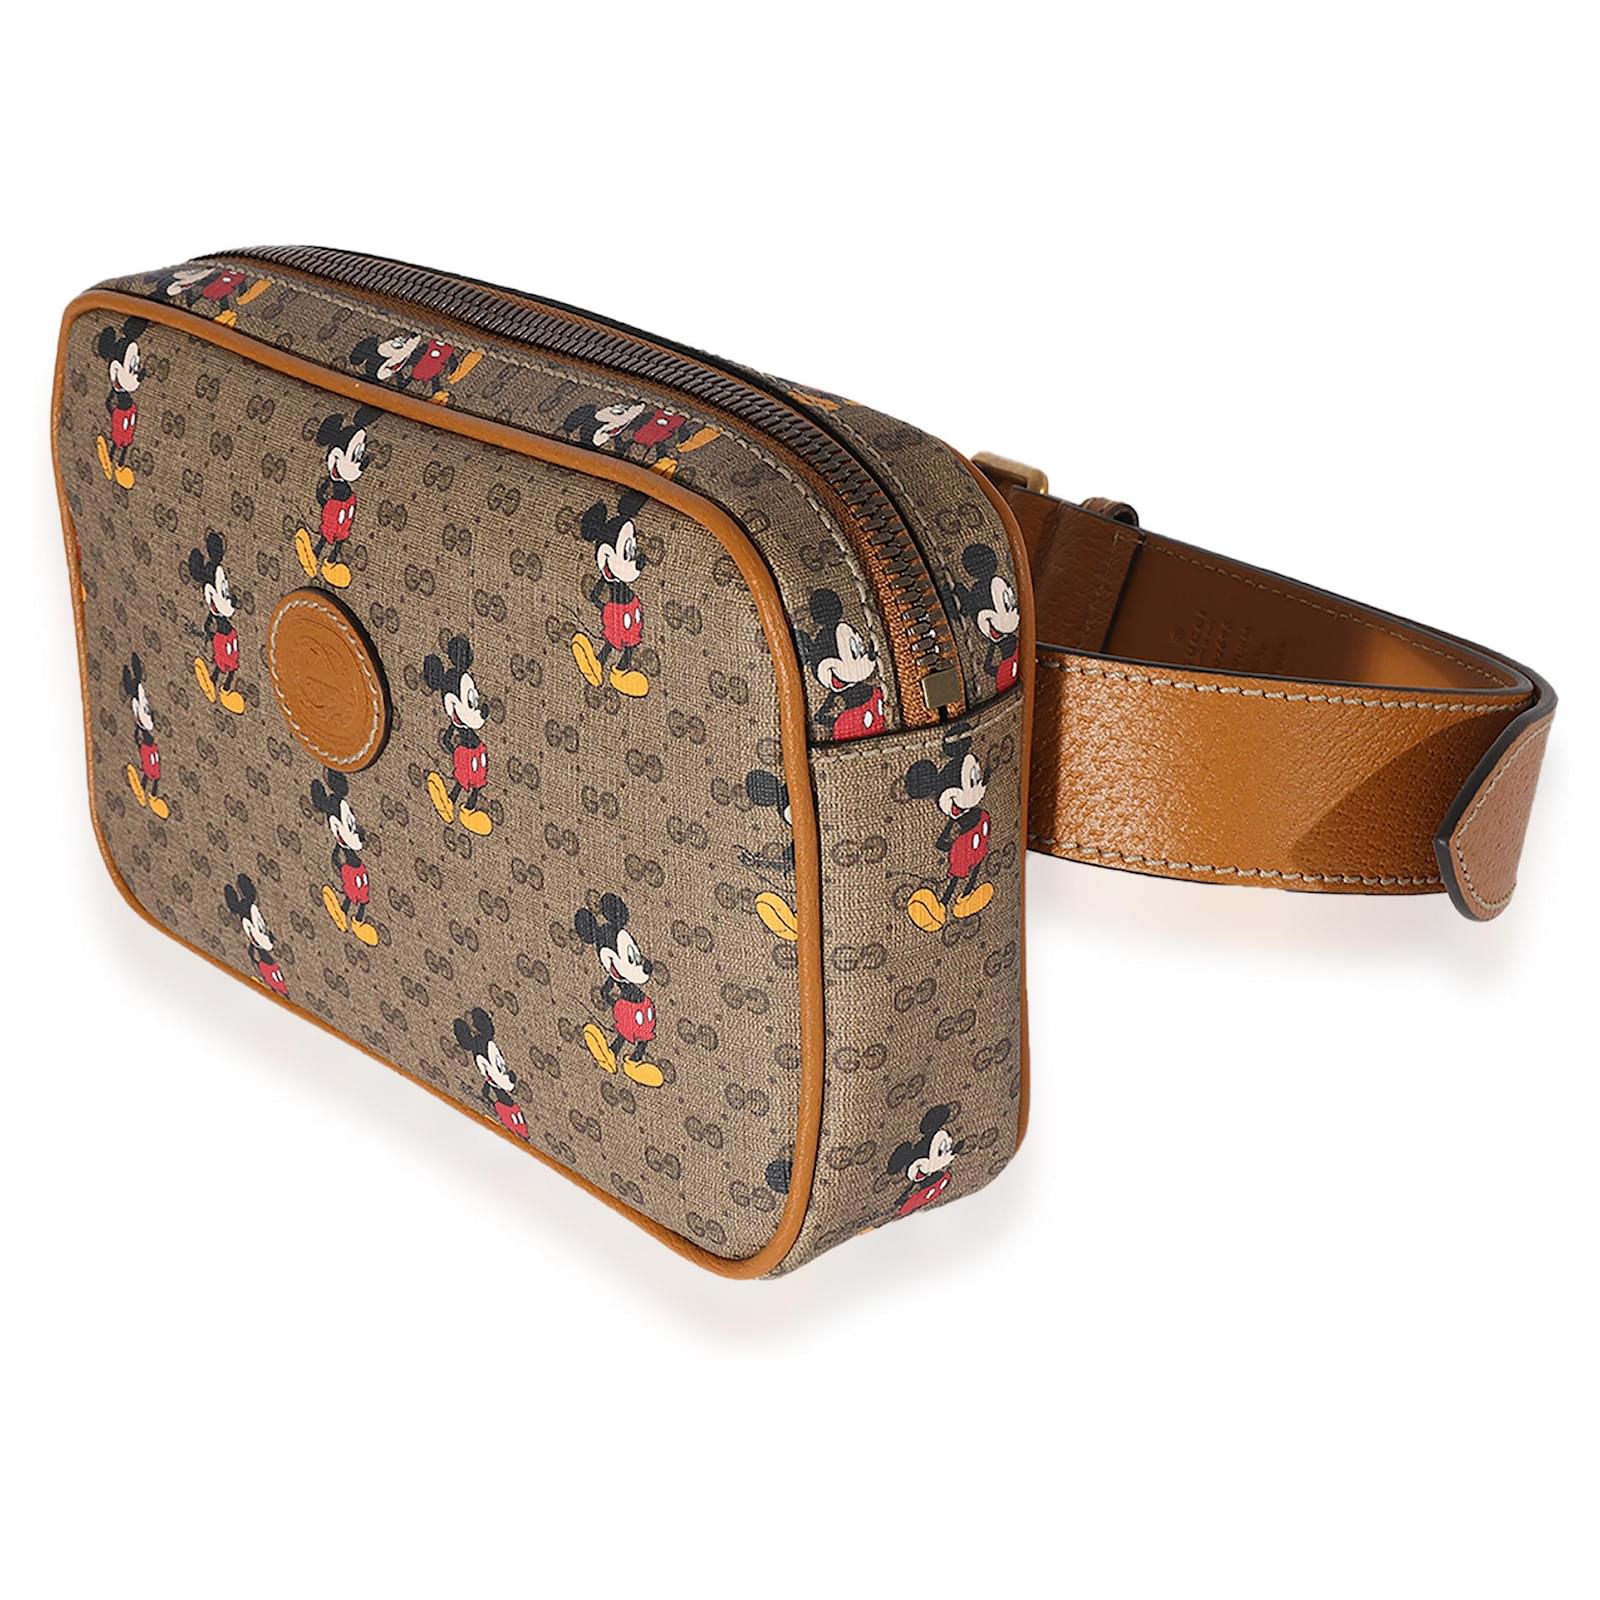 Gucci X Disney belt bag